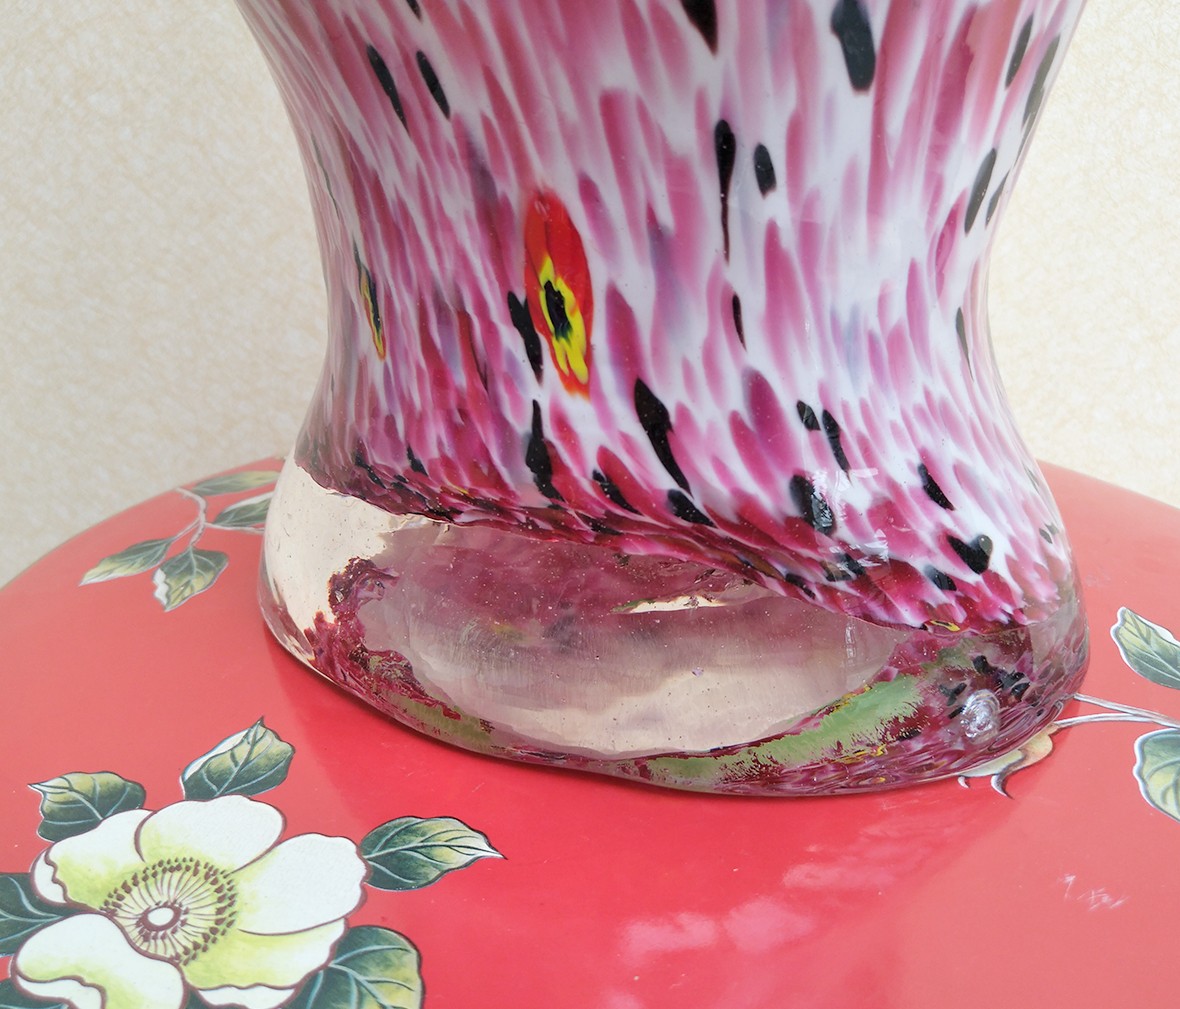 大峡谷 人体花瓶 瓷器摆件 陶瓷材质 工艺品